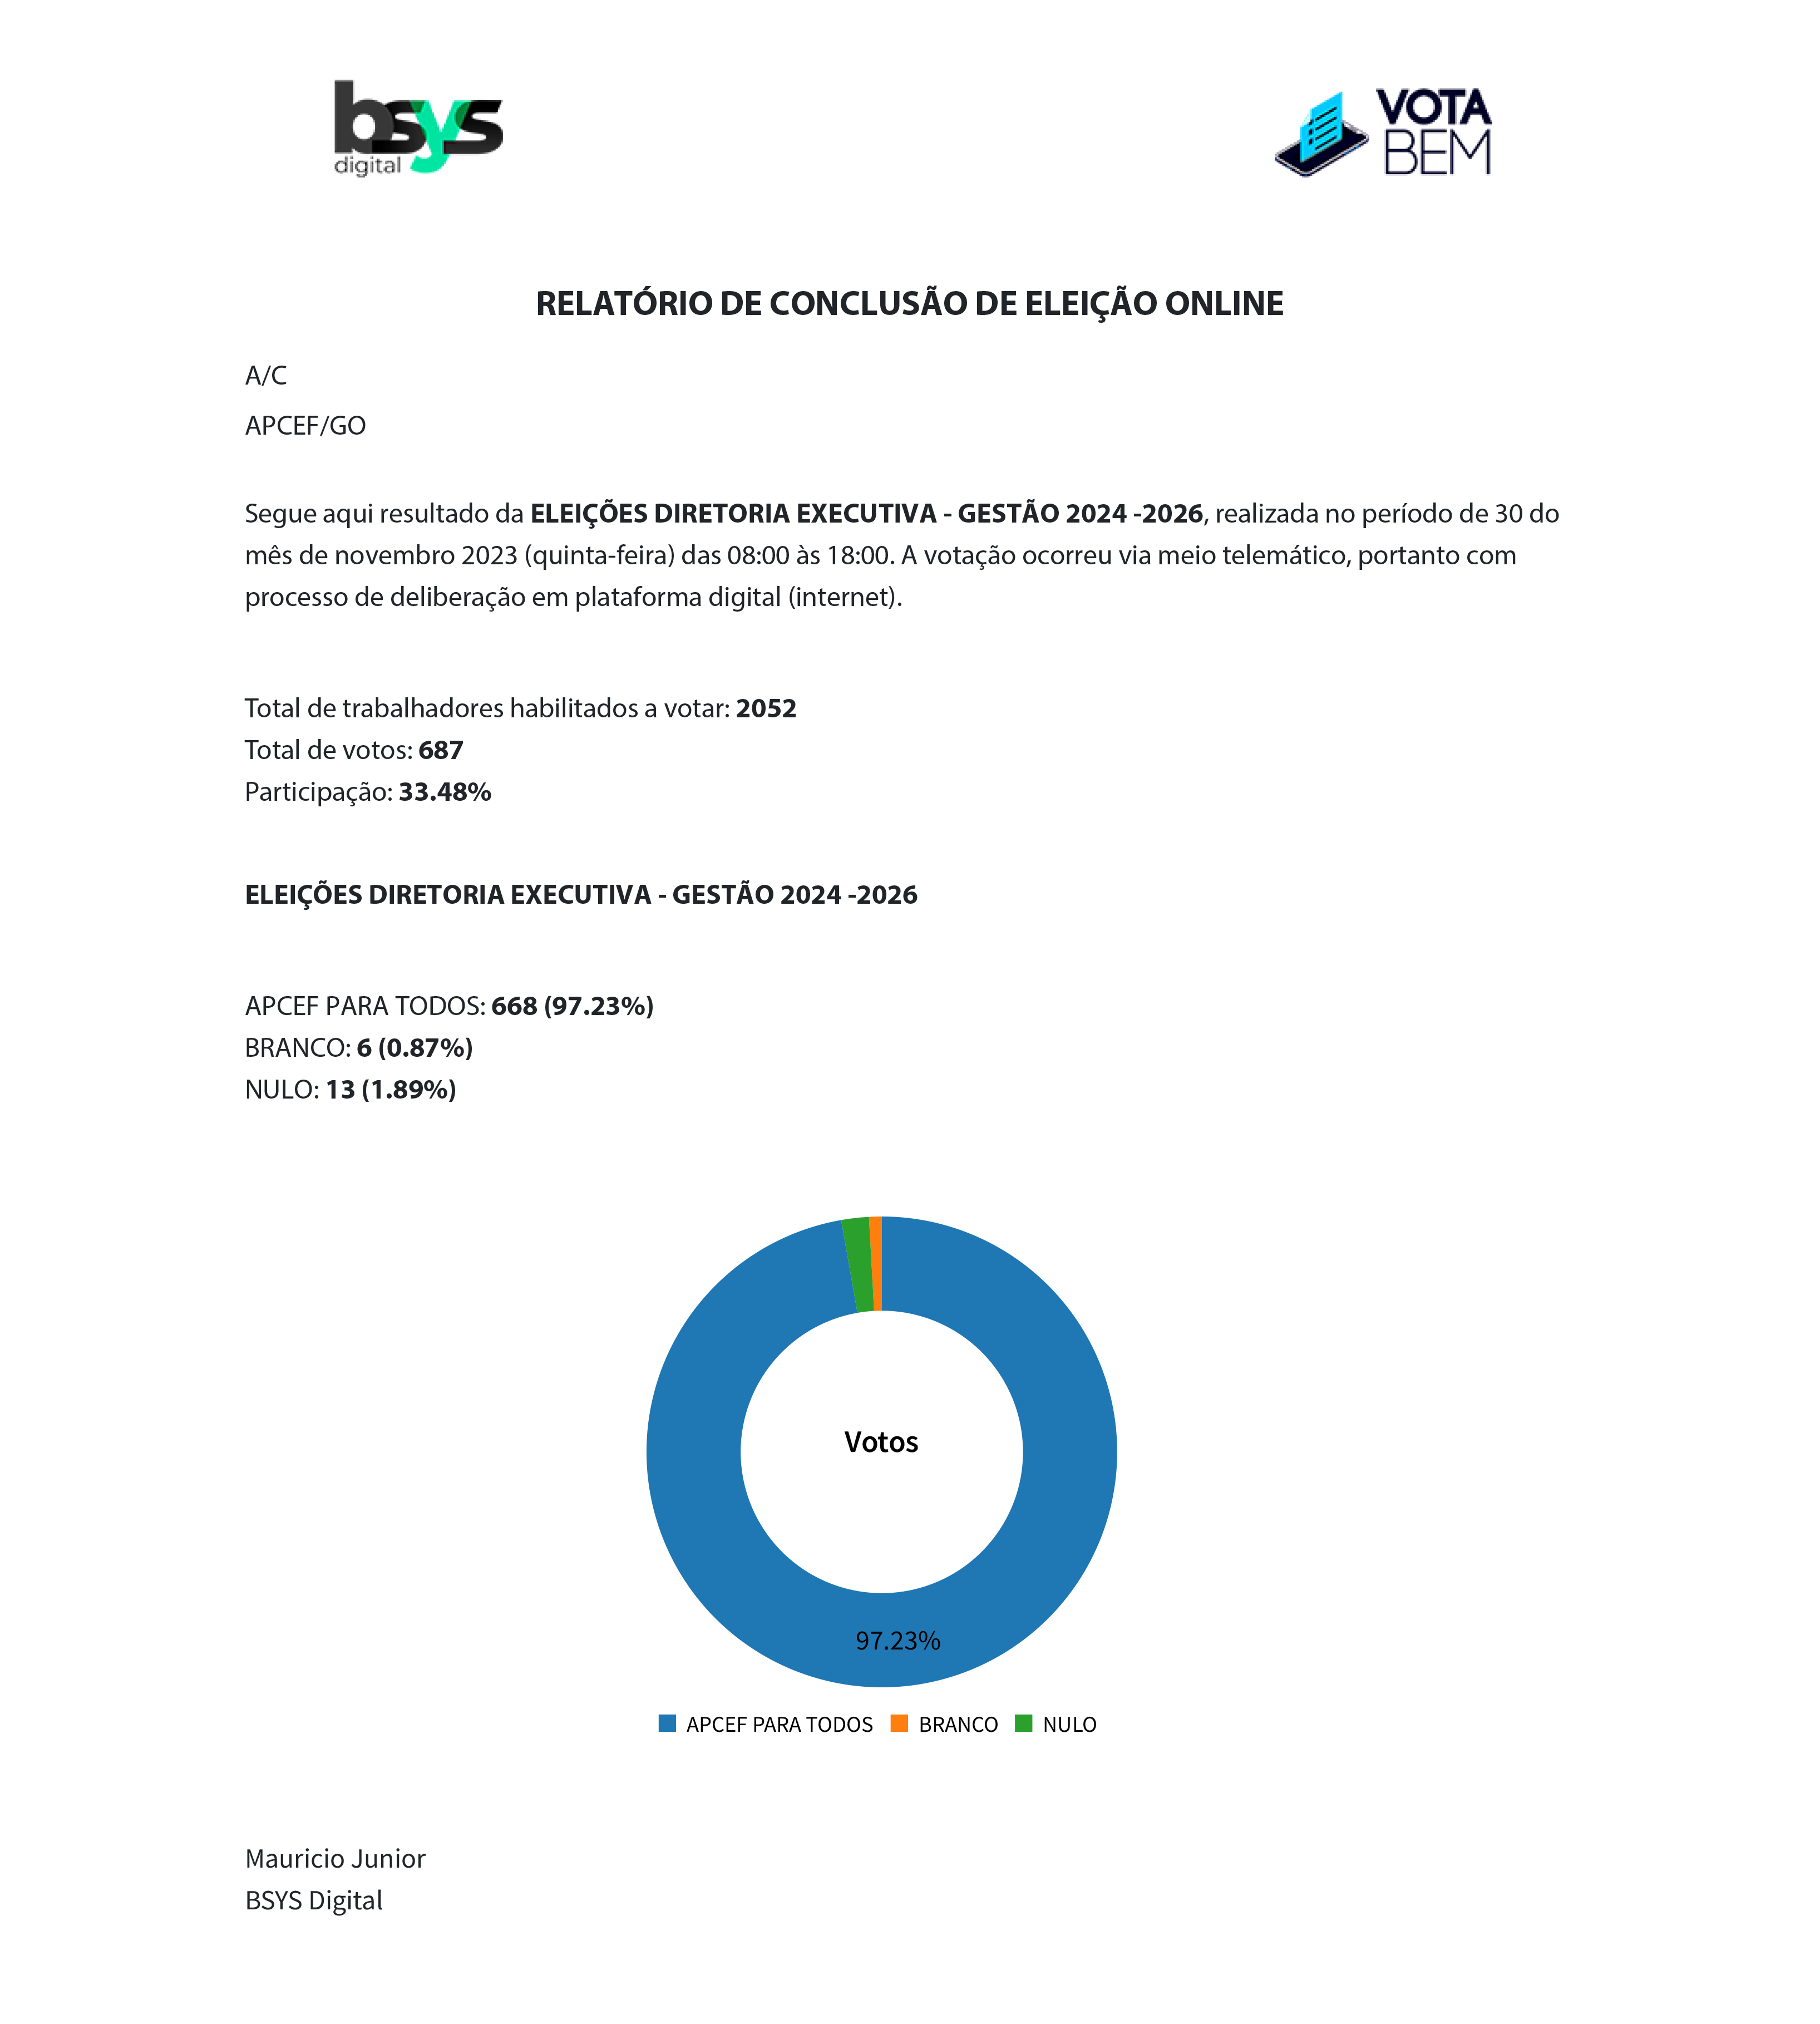 APCEF-GO Eleicao - relatorio.2023.png